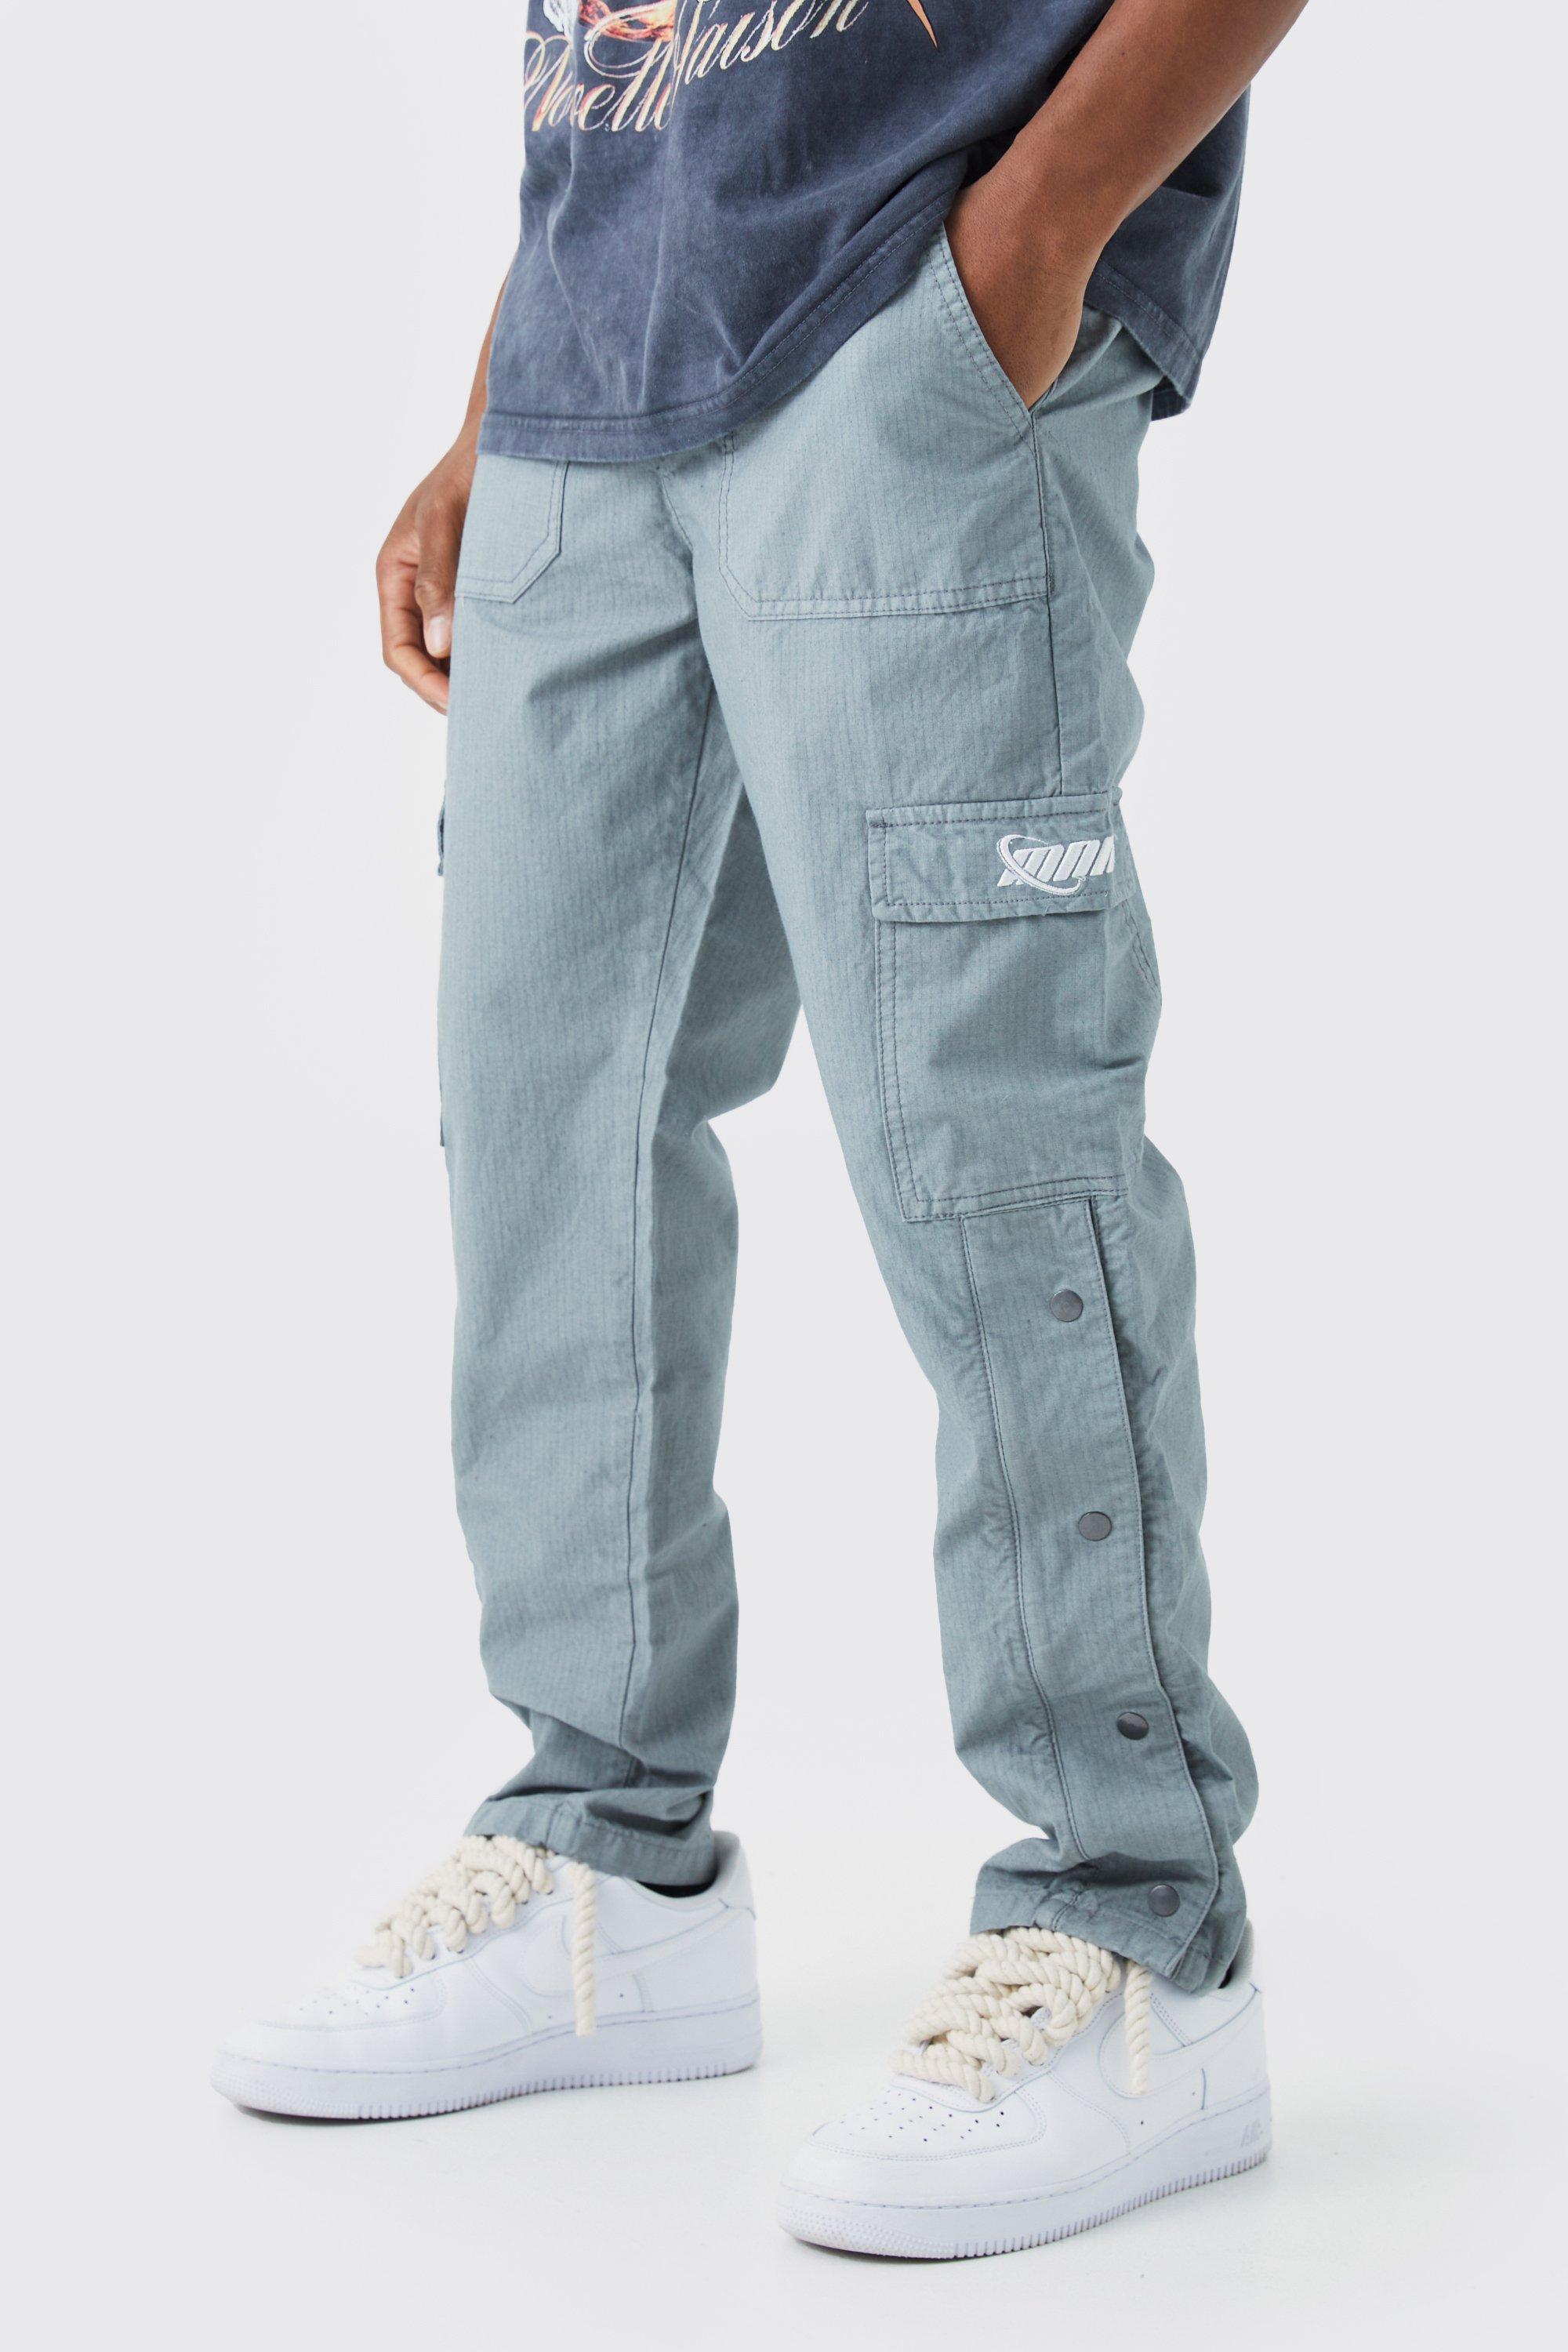 pantalon cargo droit à boutons pression homme - gris - 32, gris